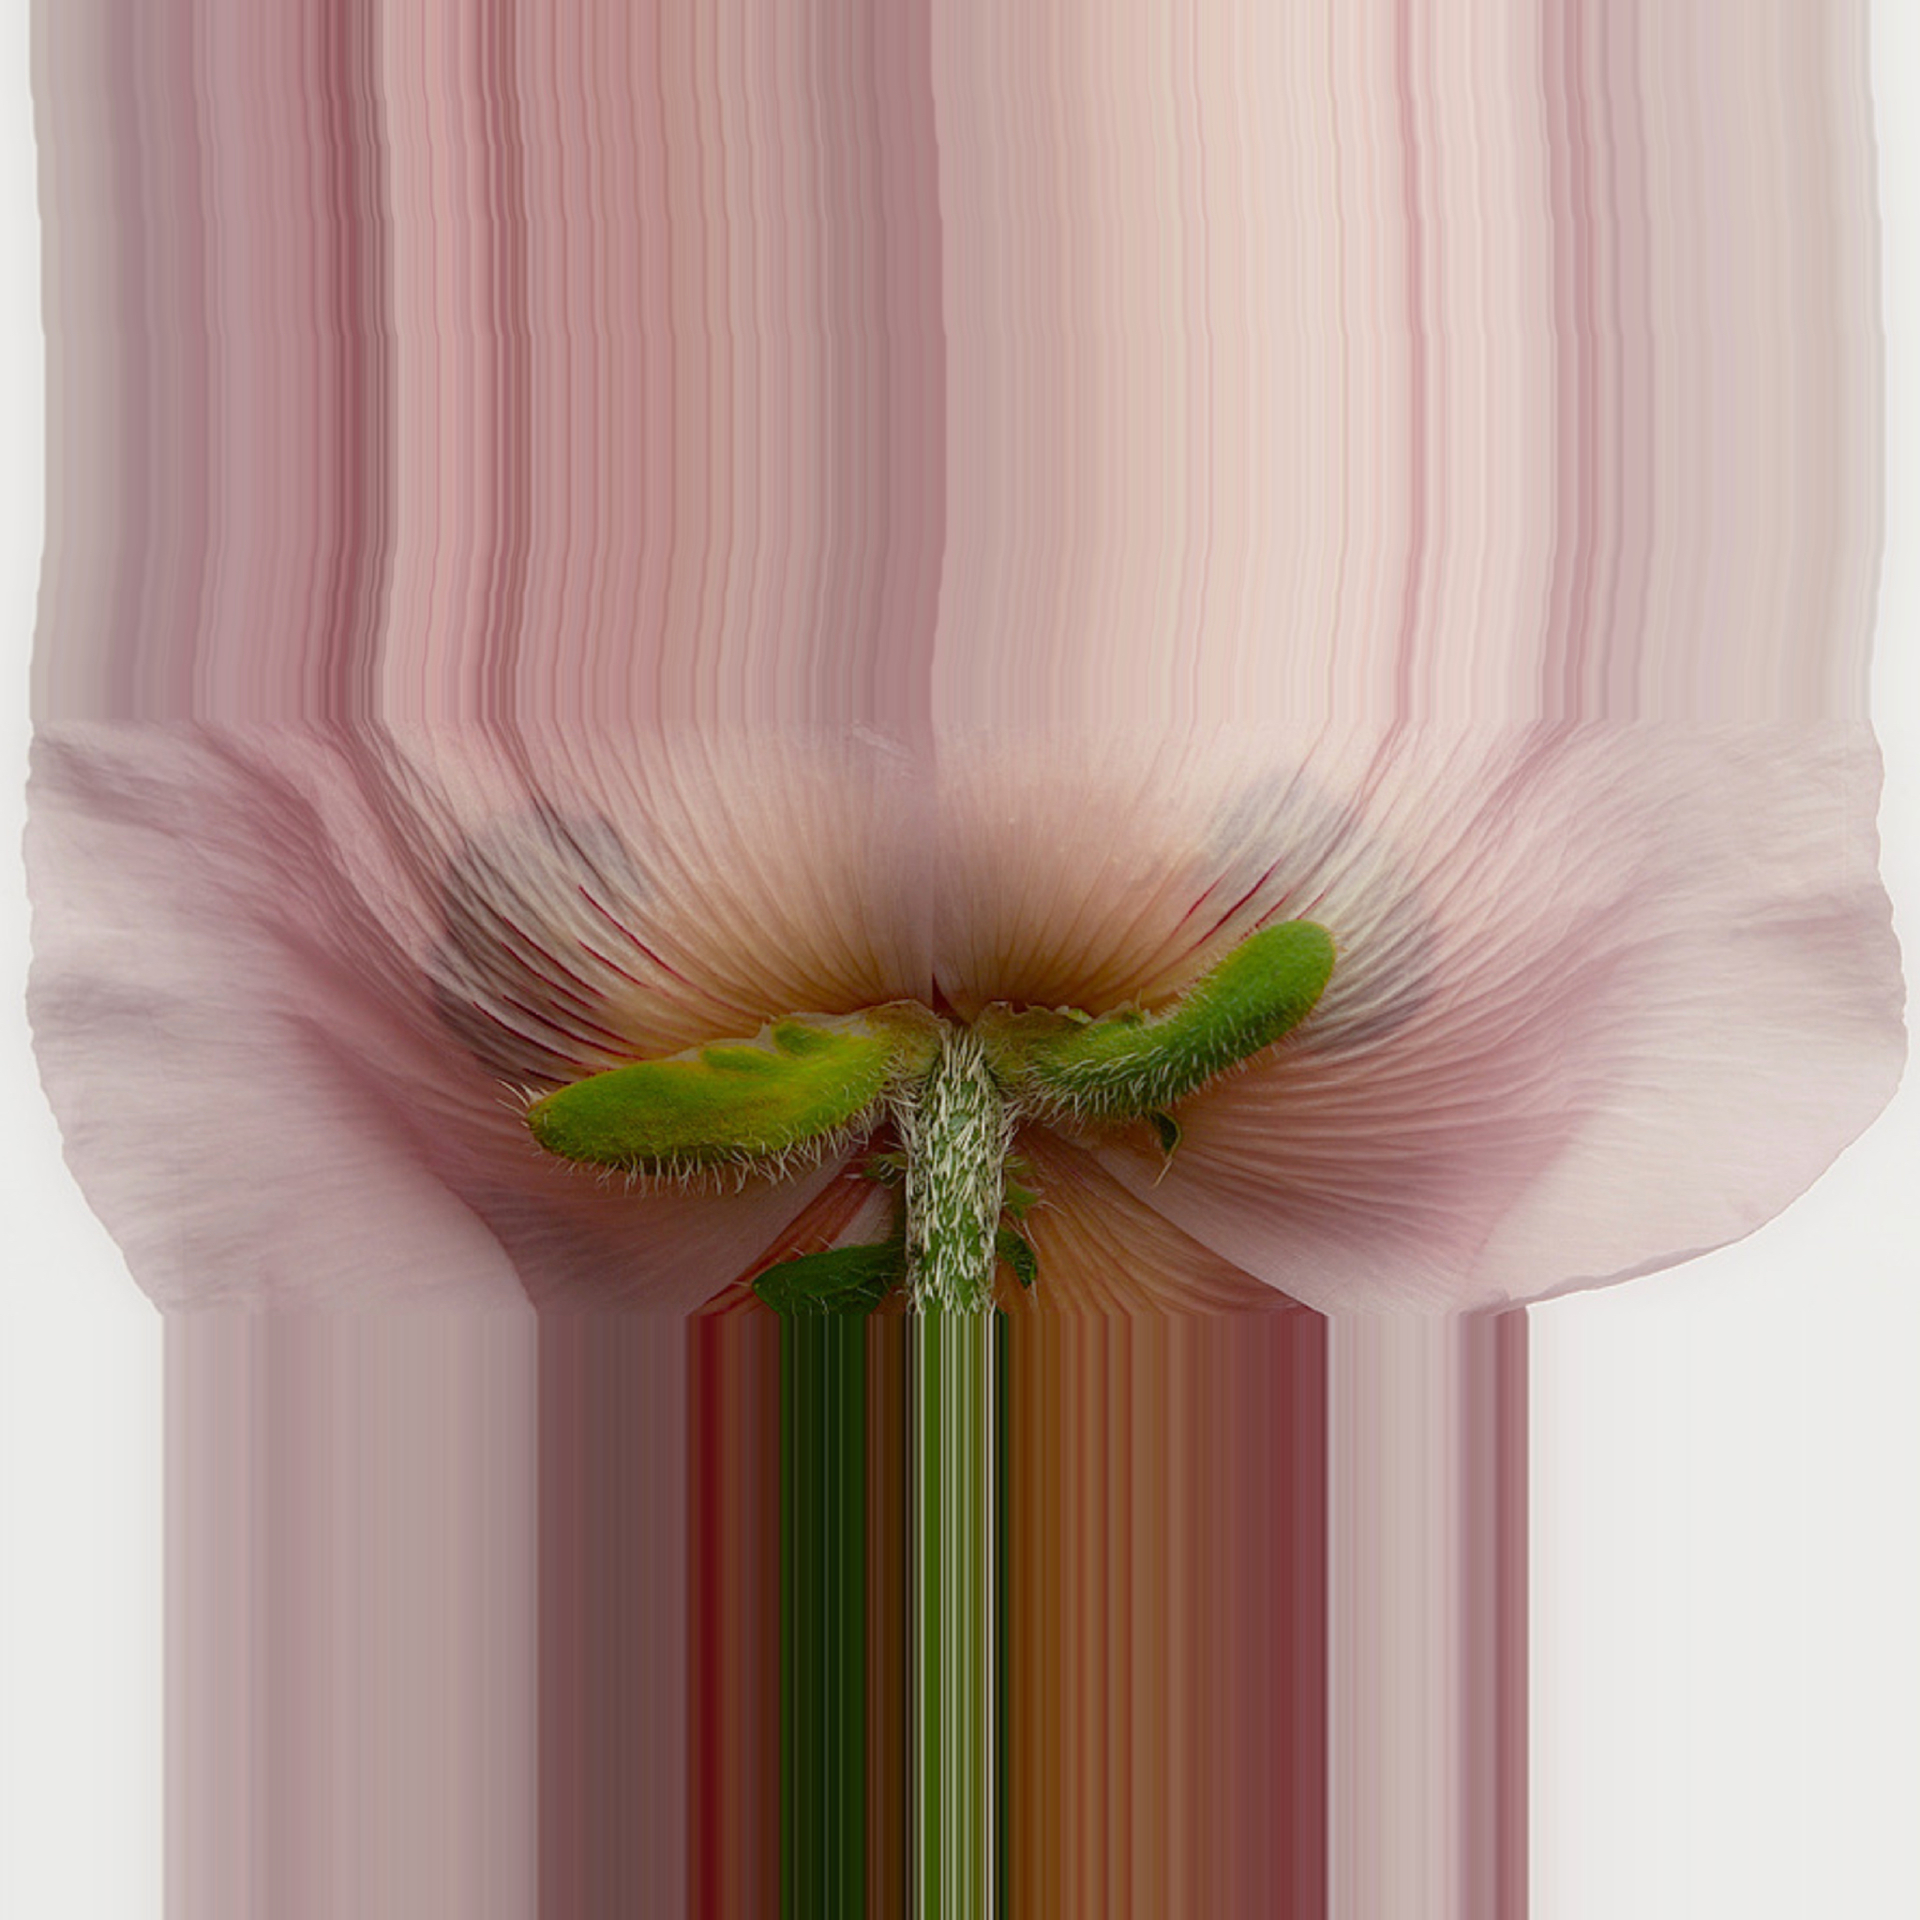 Pink Flower Glitch Art #2 by Oz Van Rosen